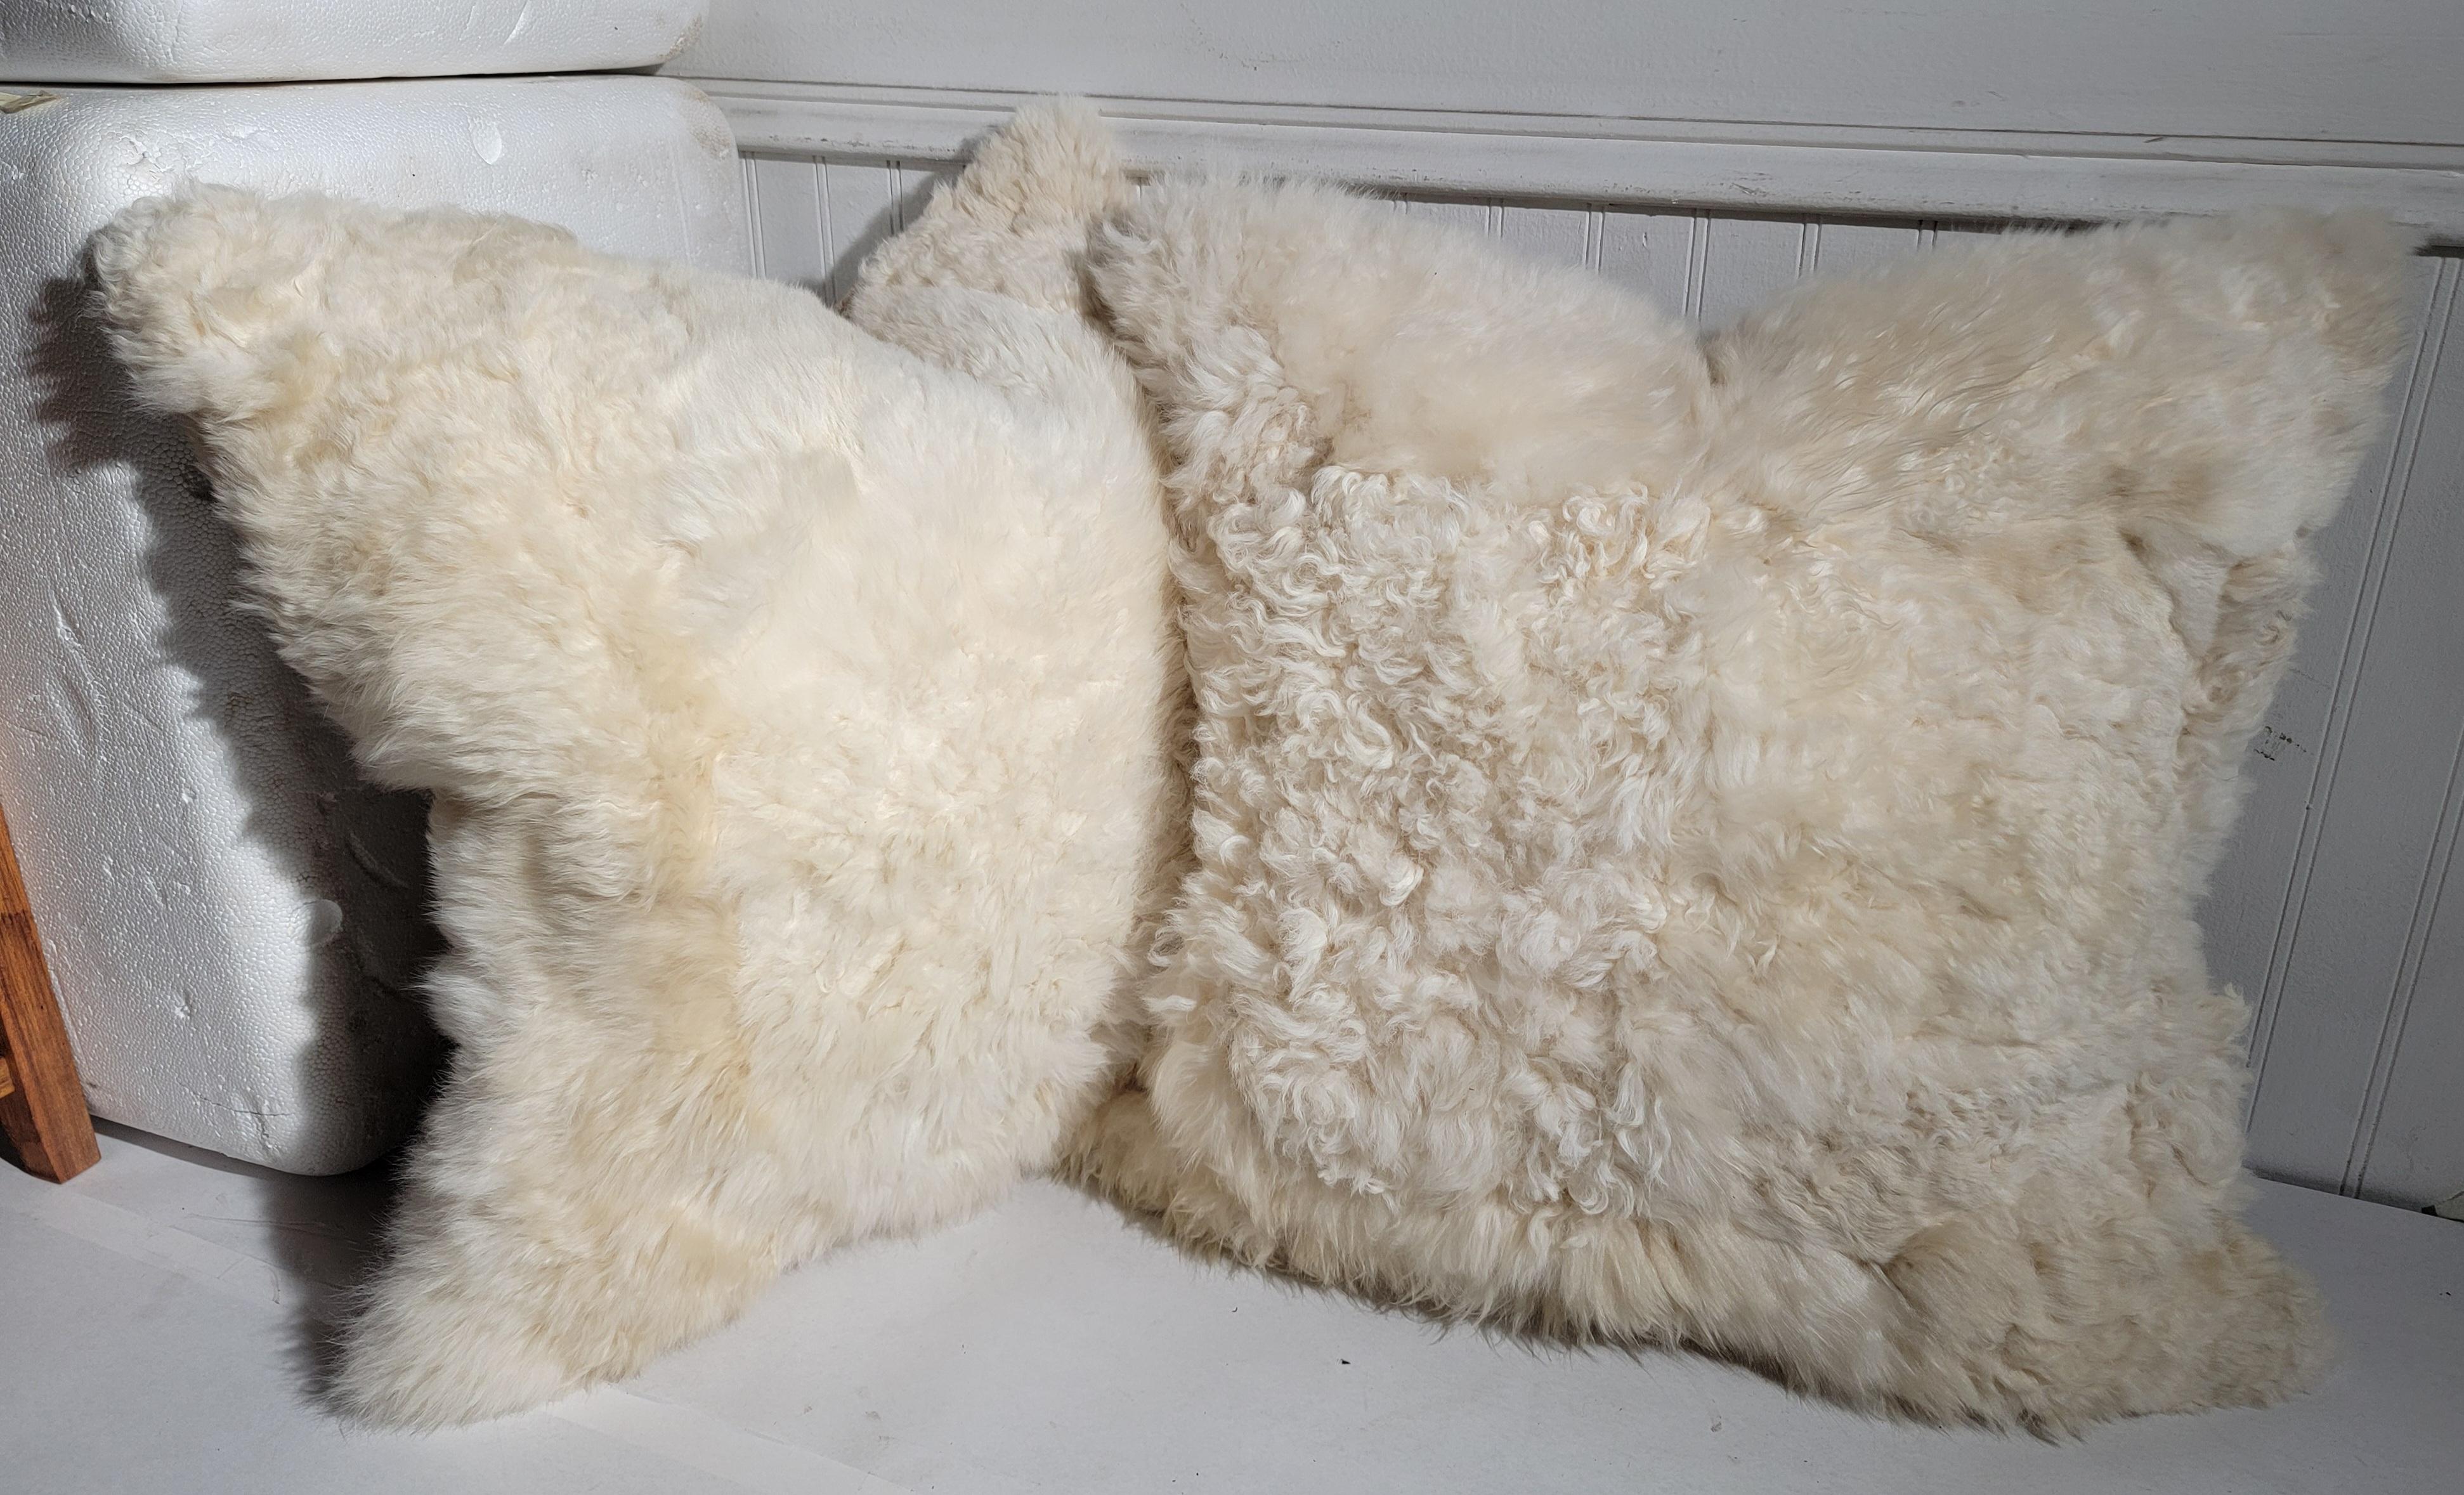 Diese superweichen & plüschigen Schafsfell-Kissen sind wirklich erstaunlich! Verkauft einzeln oder als Paar Die Rückseiten sind in einem fo Lammfell auch sehr weich und bequem.
Der Preis gilt für ein Paar.